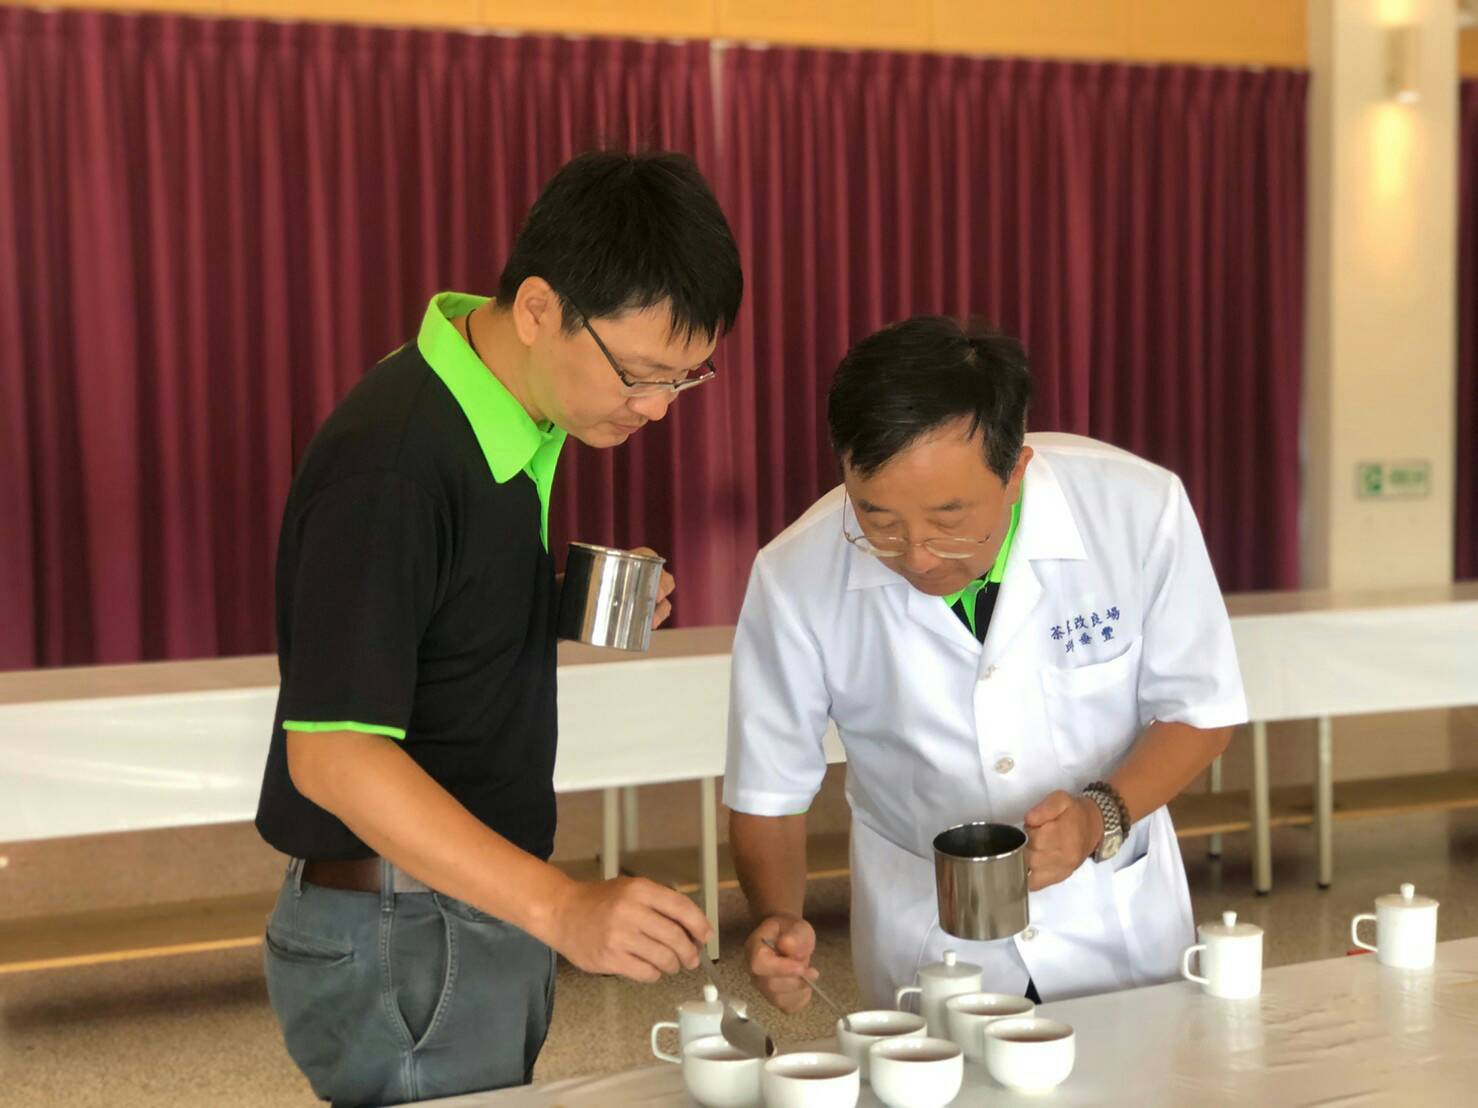 全國紅茶製茶技術競賽成績出爐 宜蘭縣蕭堂林獲冠軍殊榮